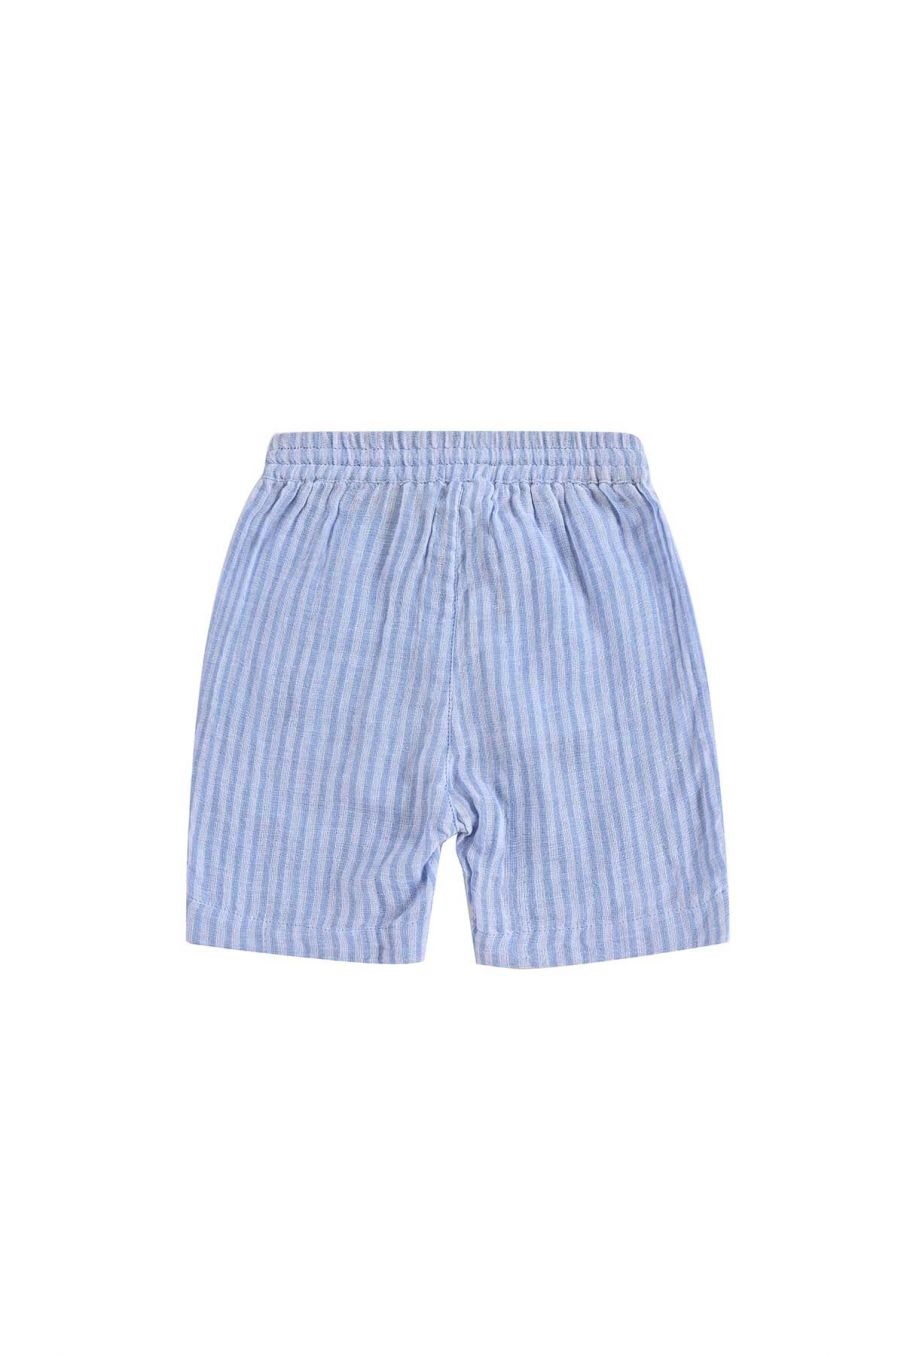 bebe-garcon-shorts-obiki-blue-stripes